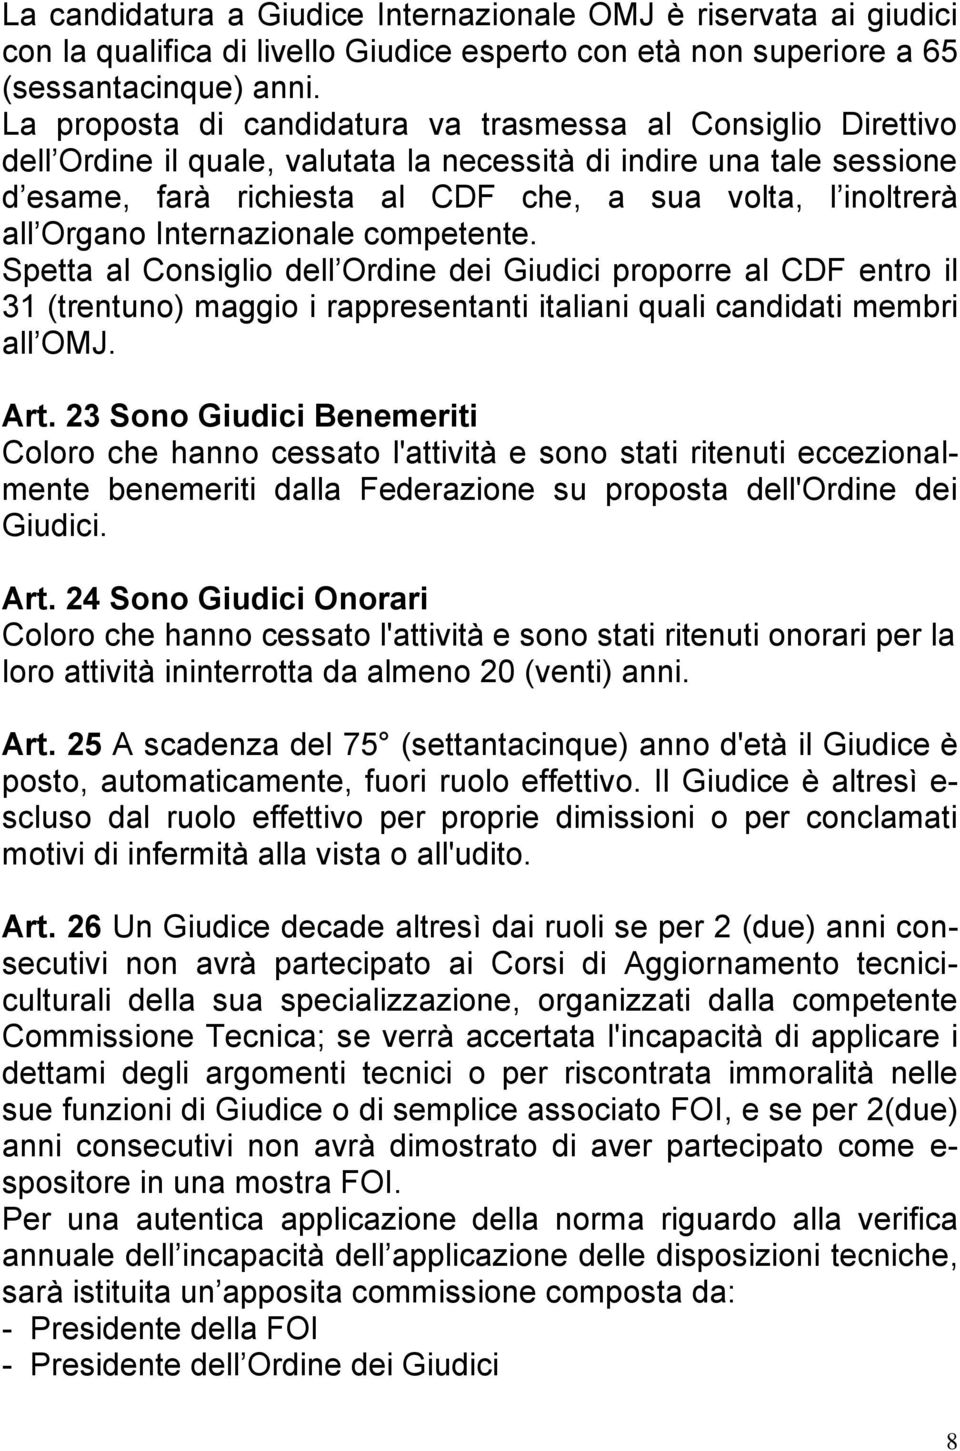 Organo Internazionale competente. Spetta al Consiglio dell Ordine dei Giudici proporre al CDF entro il 31 (trentuno) maggio i rappresentanti italiani quali candidati membri all OMJ. Art.